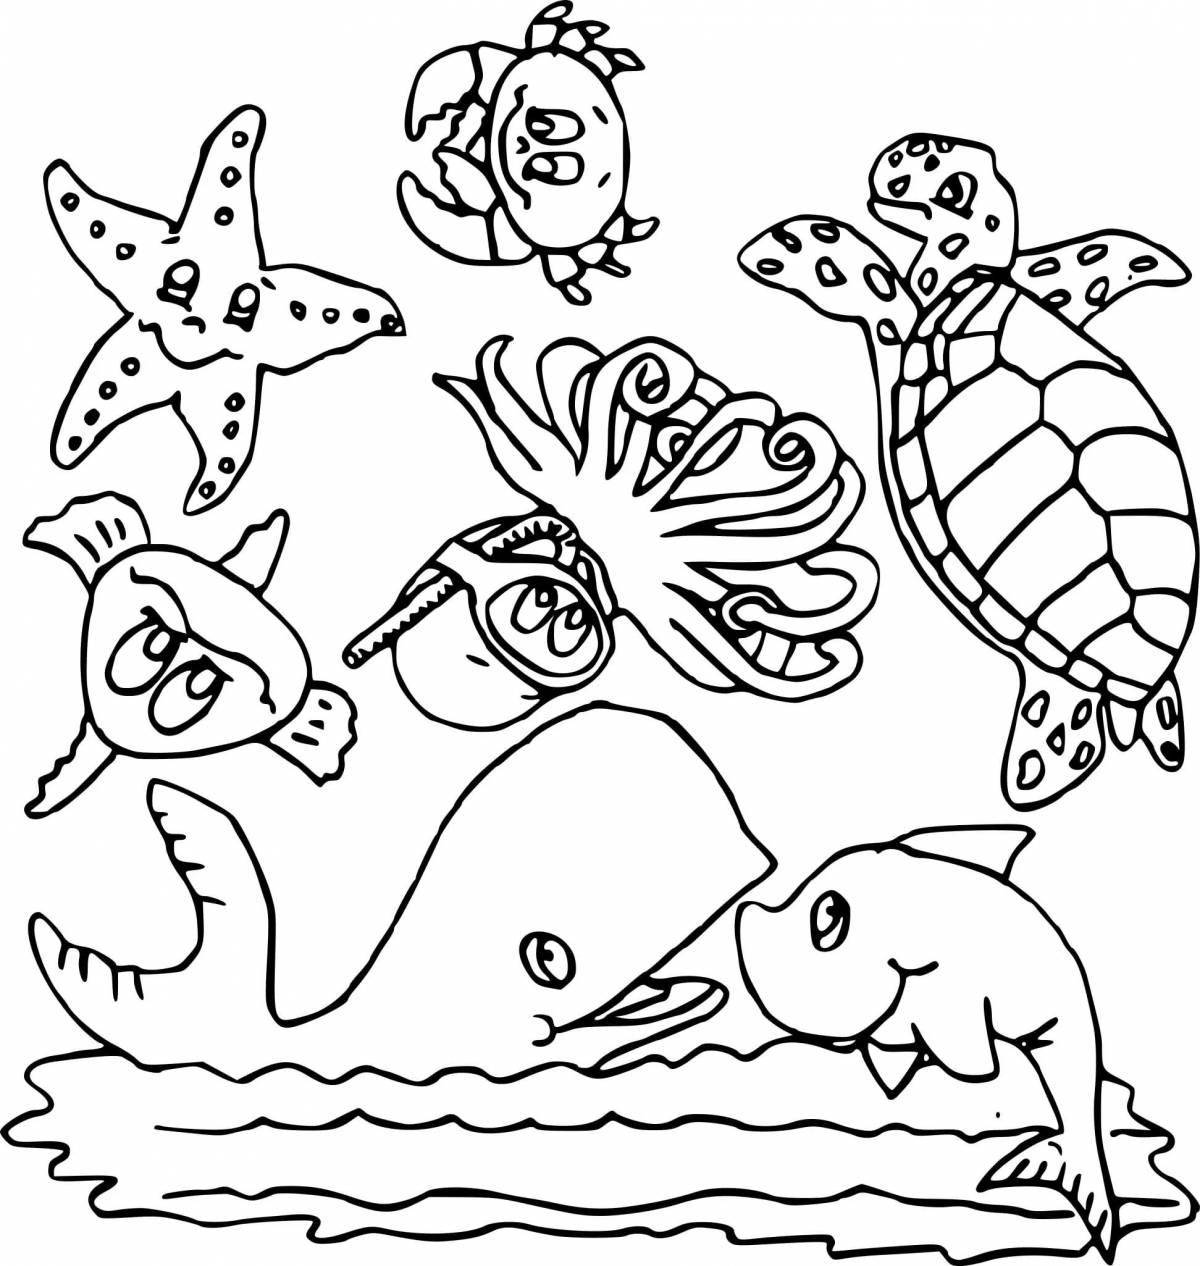 Живая страница раскраски морского дна для детей